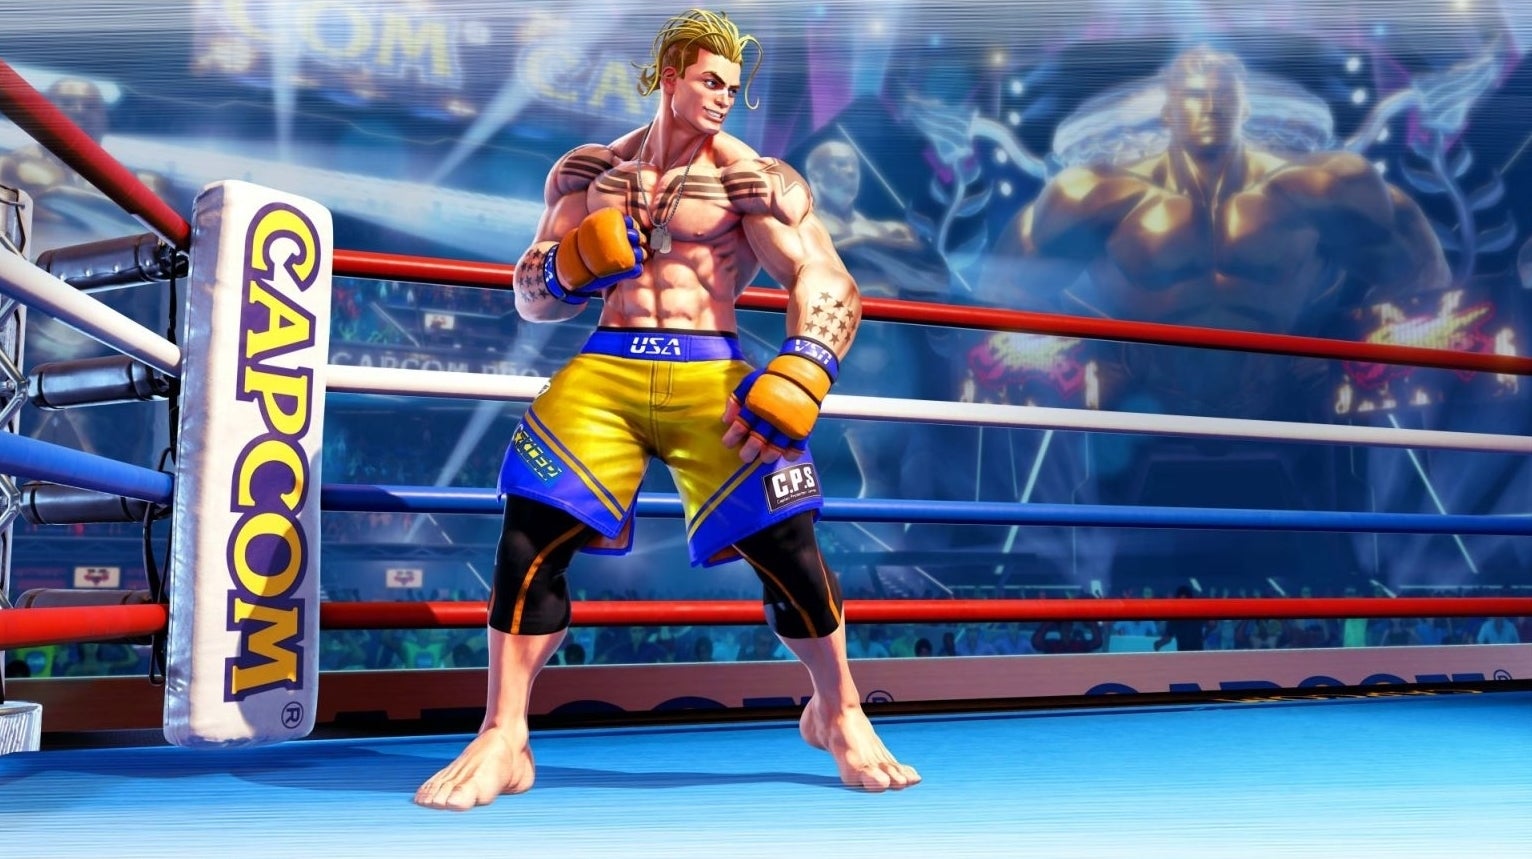 Immagine di Street Fighter V: Champion Edition trailer, data di uscita e dettagli per Luke, l'ultimo combattente in arrivo